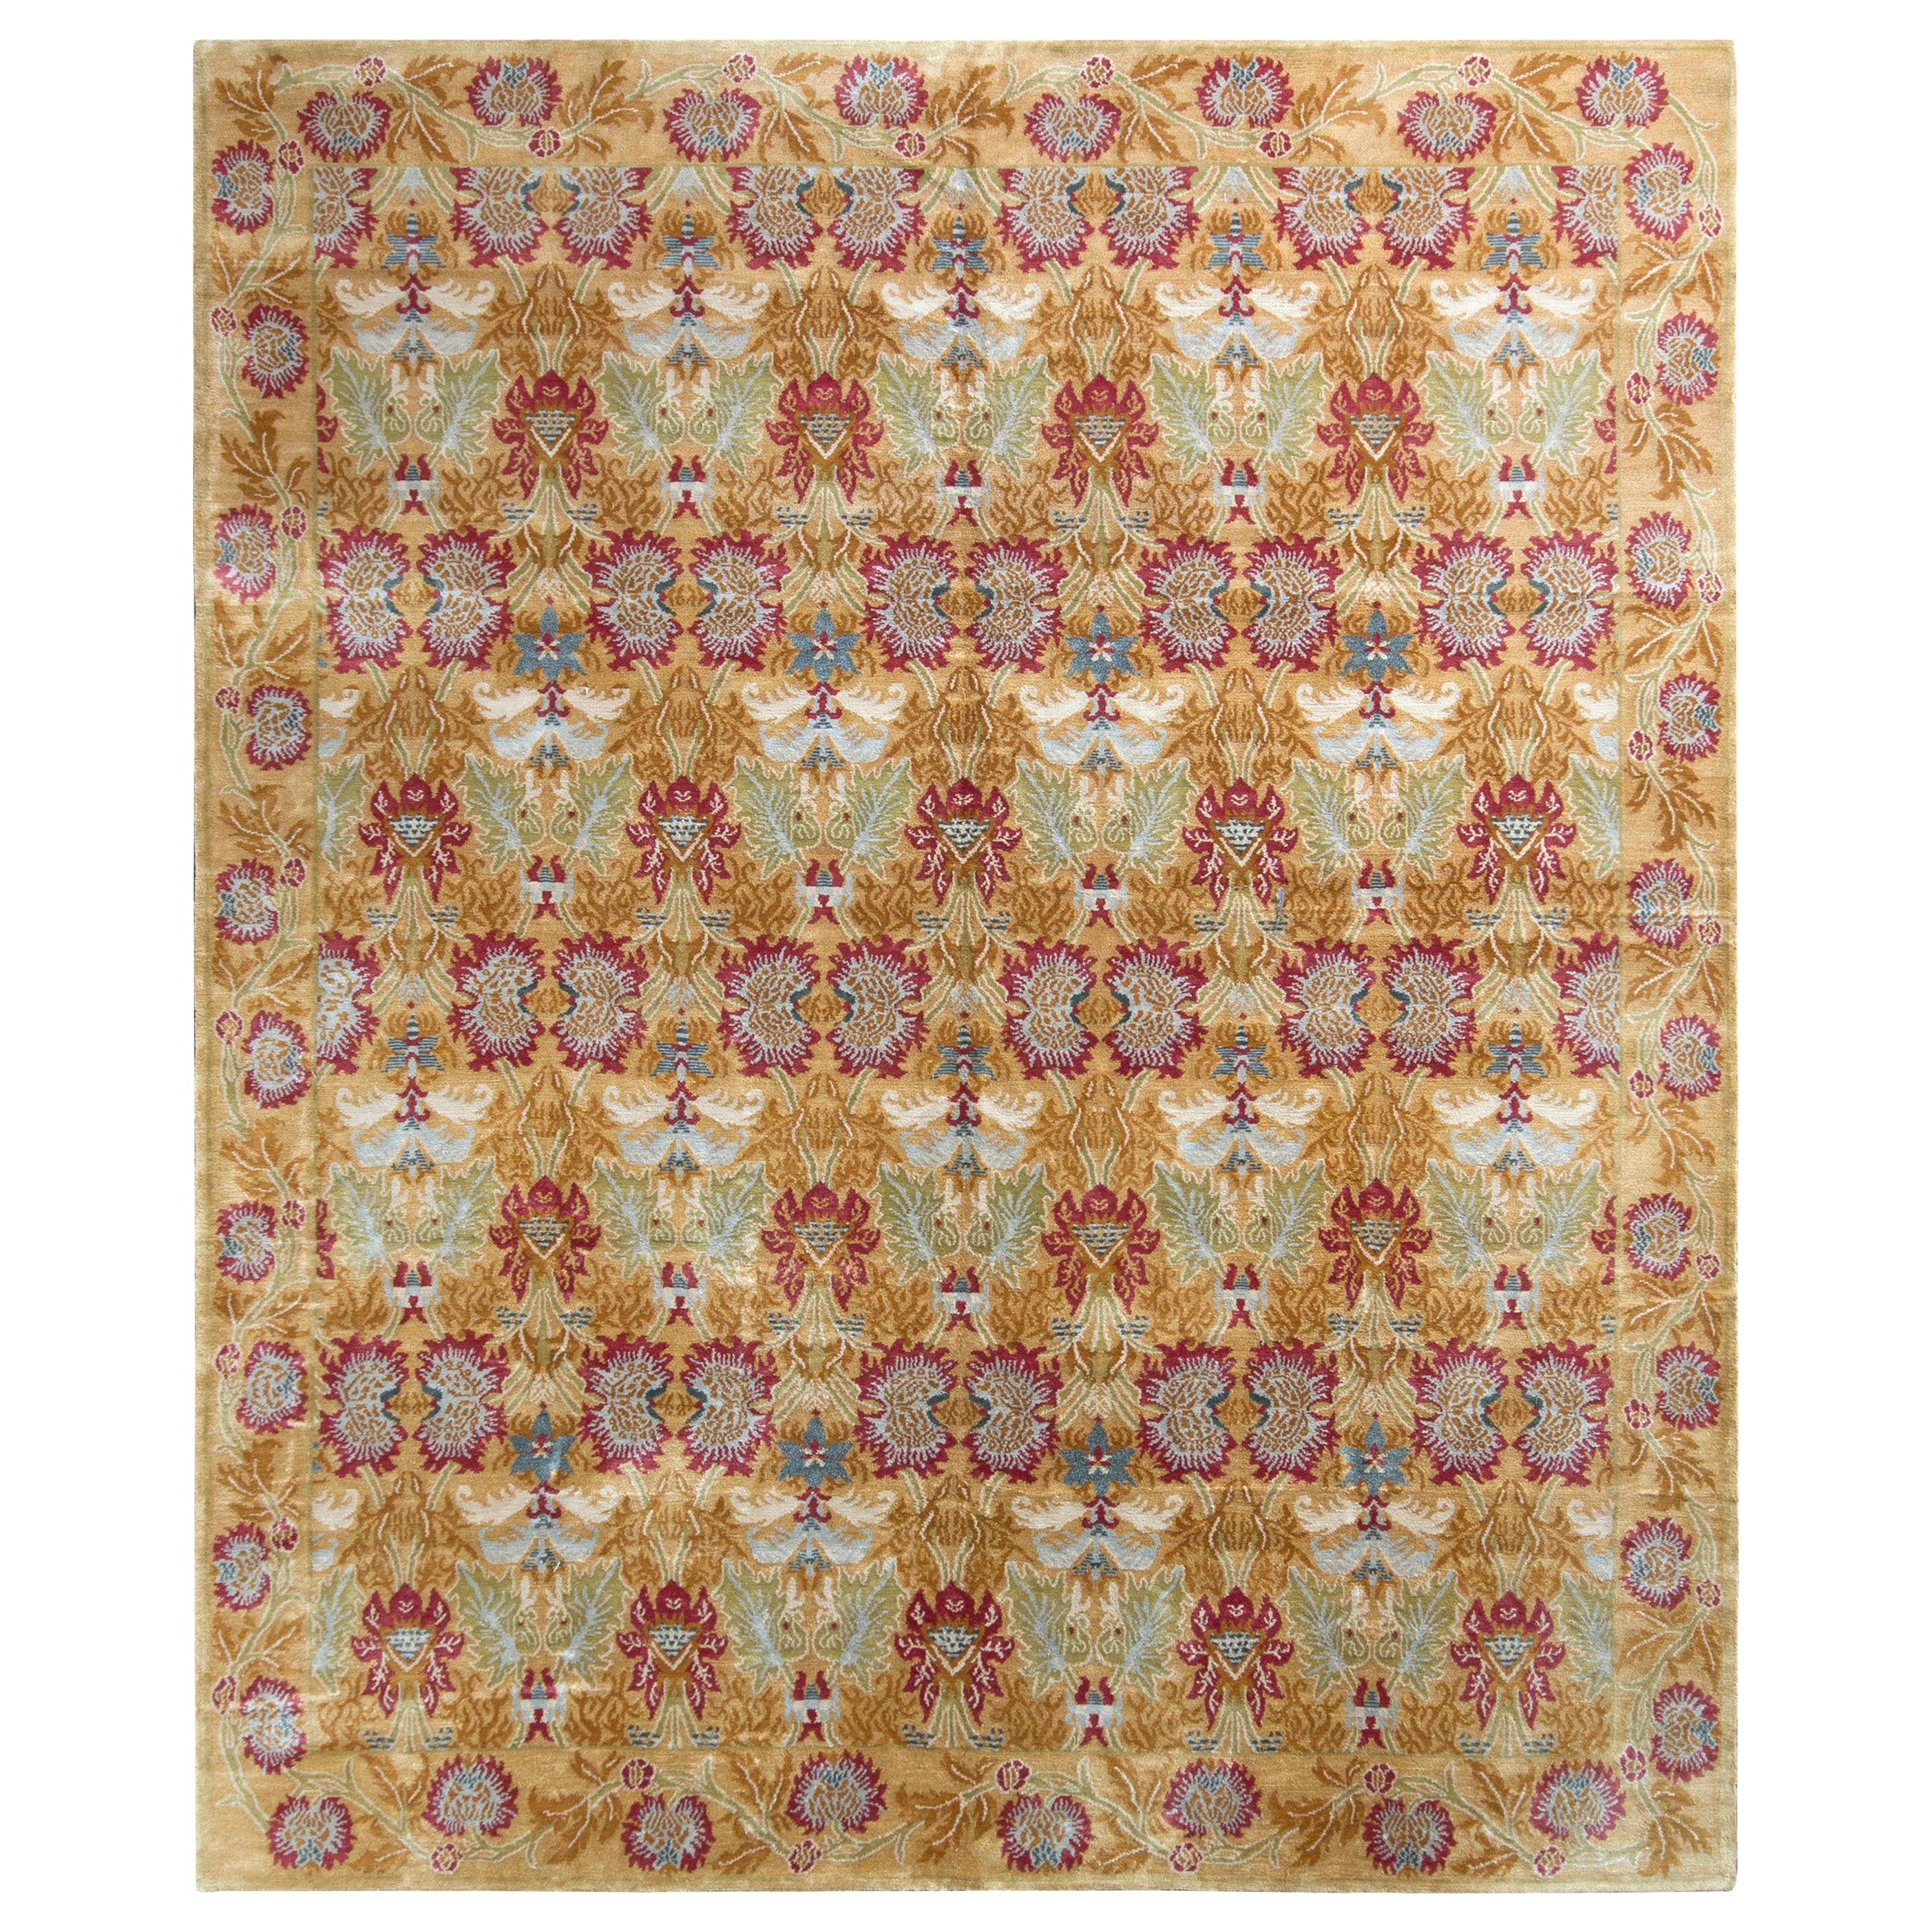 Rug & Kilim's European Style Rug in Gold and Red All Over Floral Pattern (tapis de style européen à motifs floraux dorés et rouges) en vente